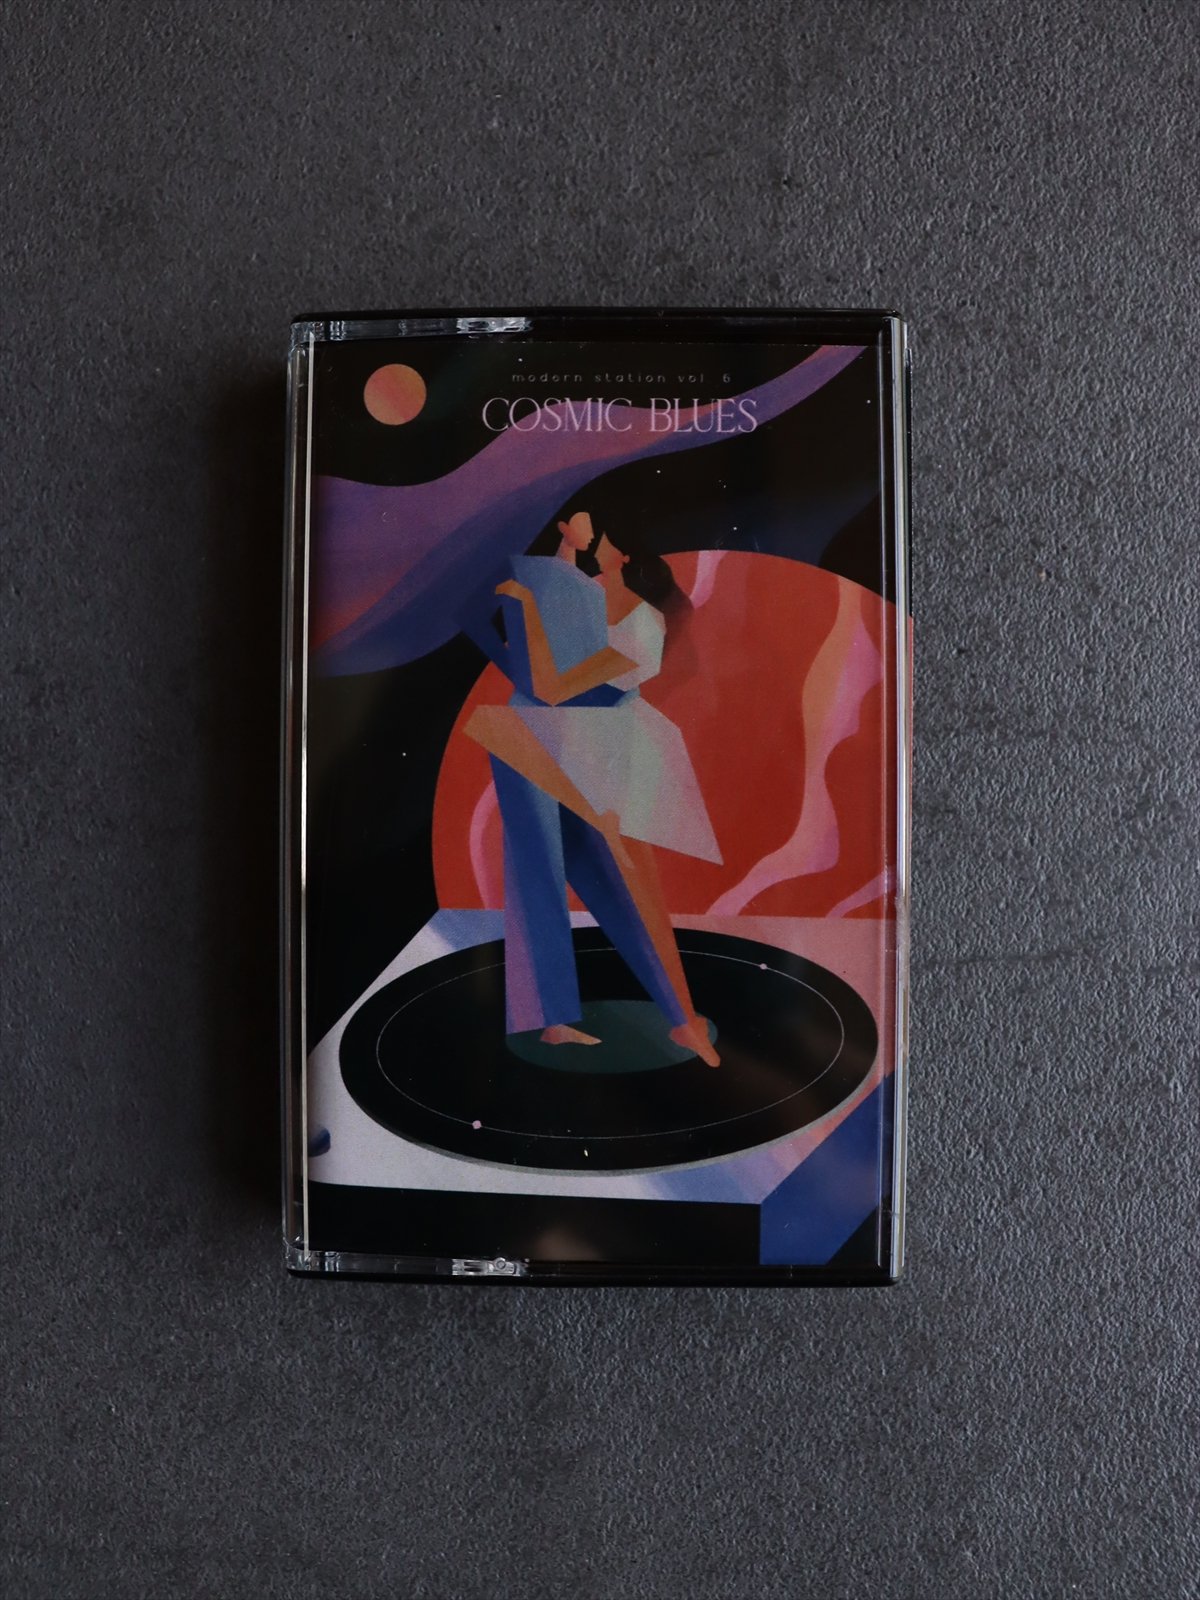 カセットテープ　vol. 6 cosmic blues／modern station